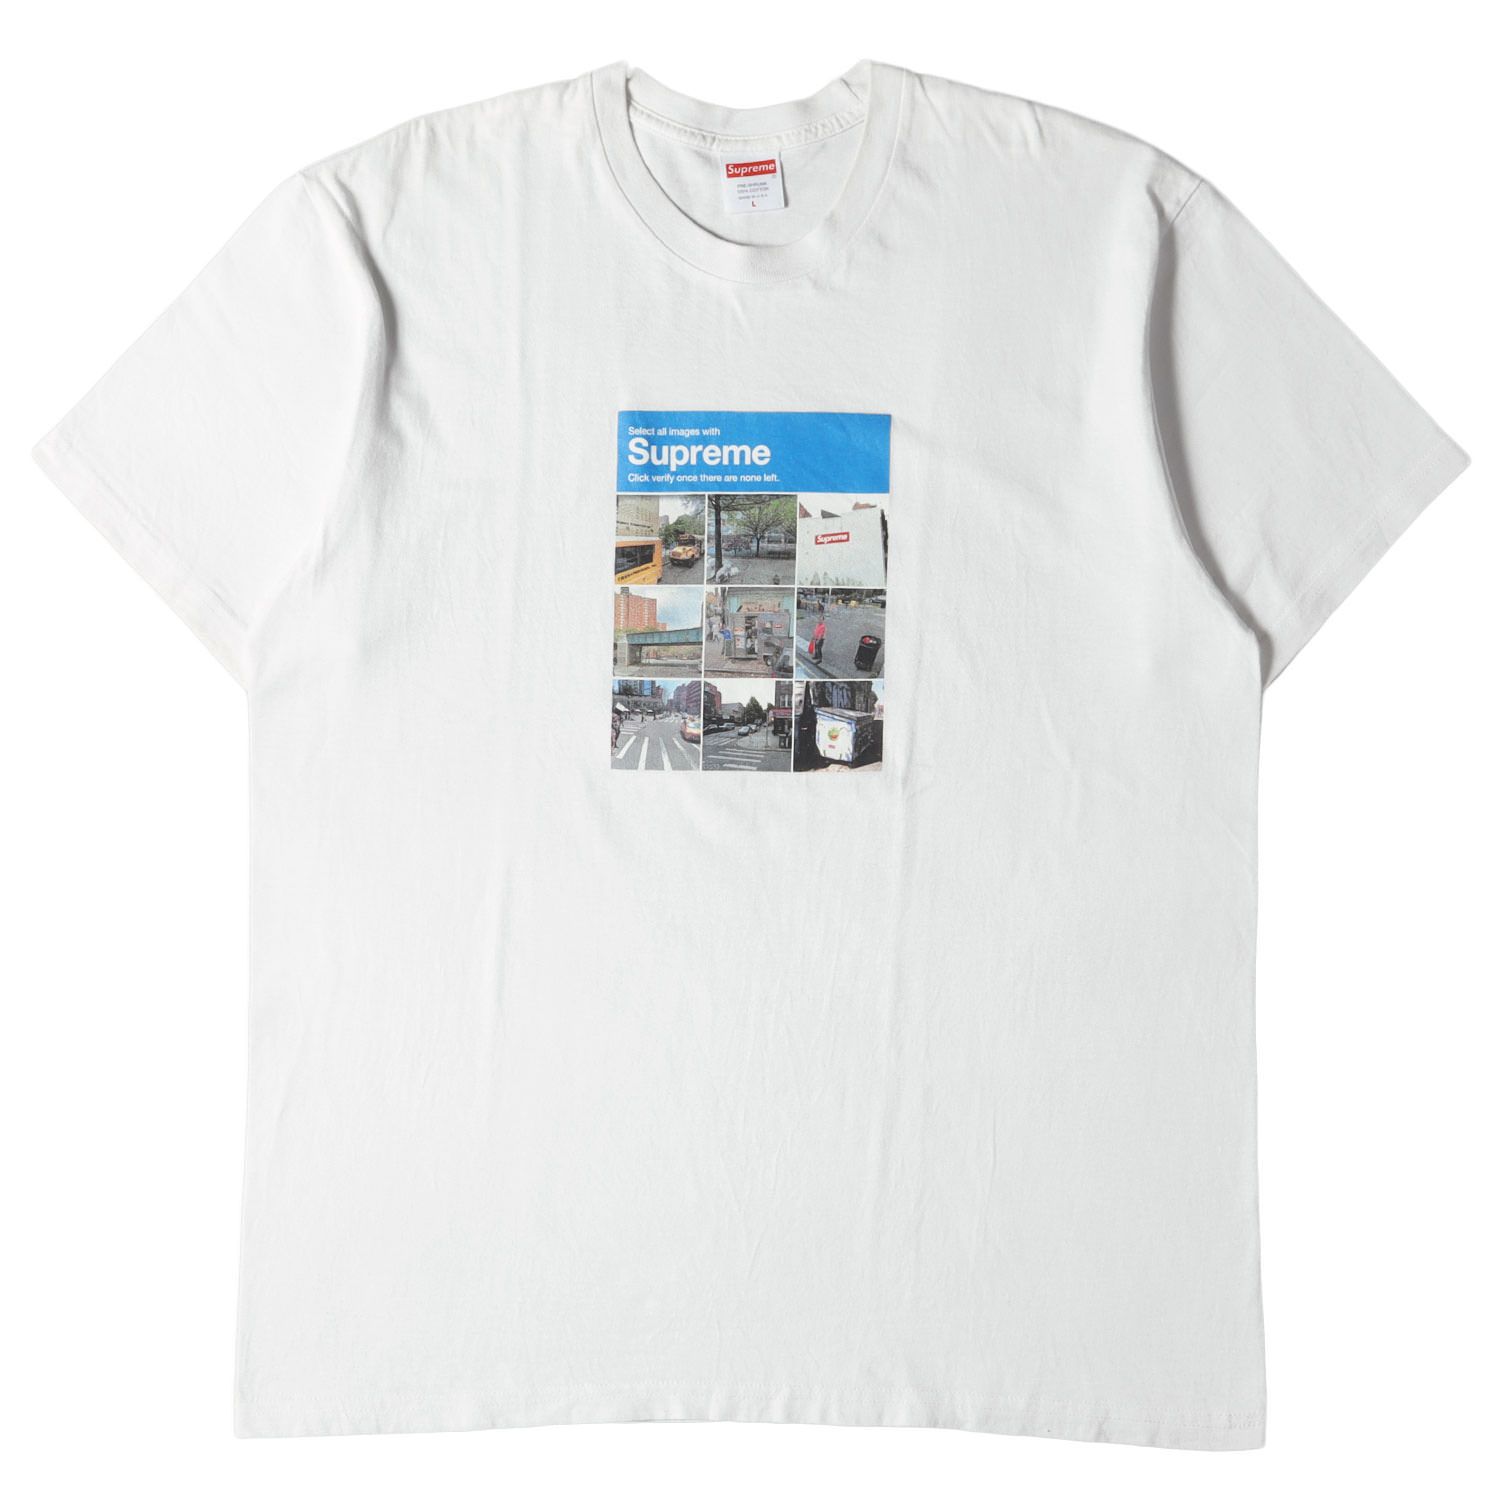 Supreme シュプリーム Tシャツ サイズ:L フォト グラフィック クルー ...